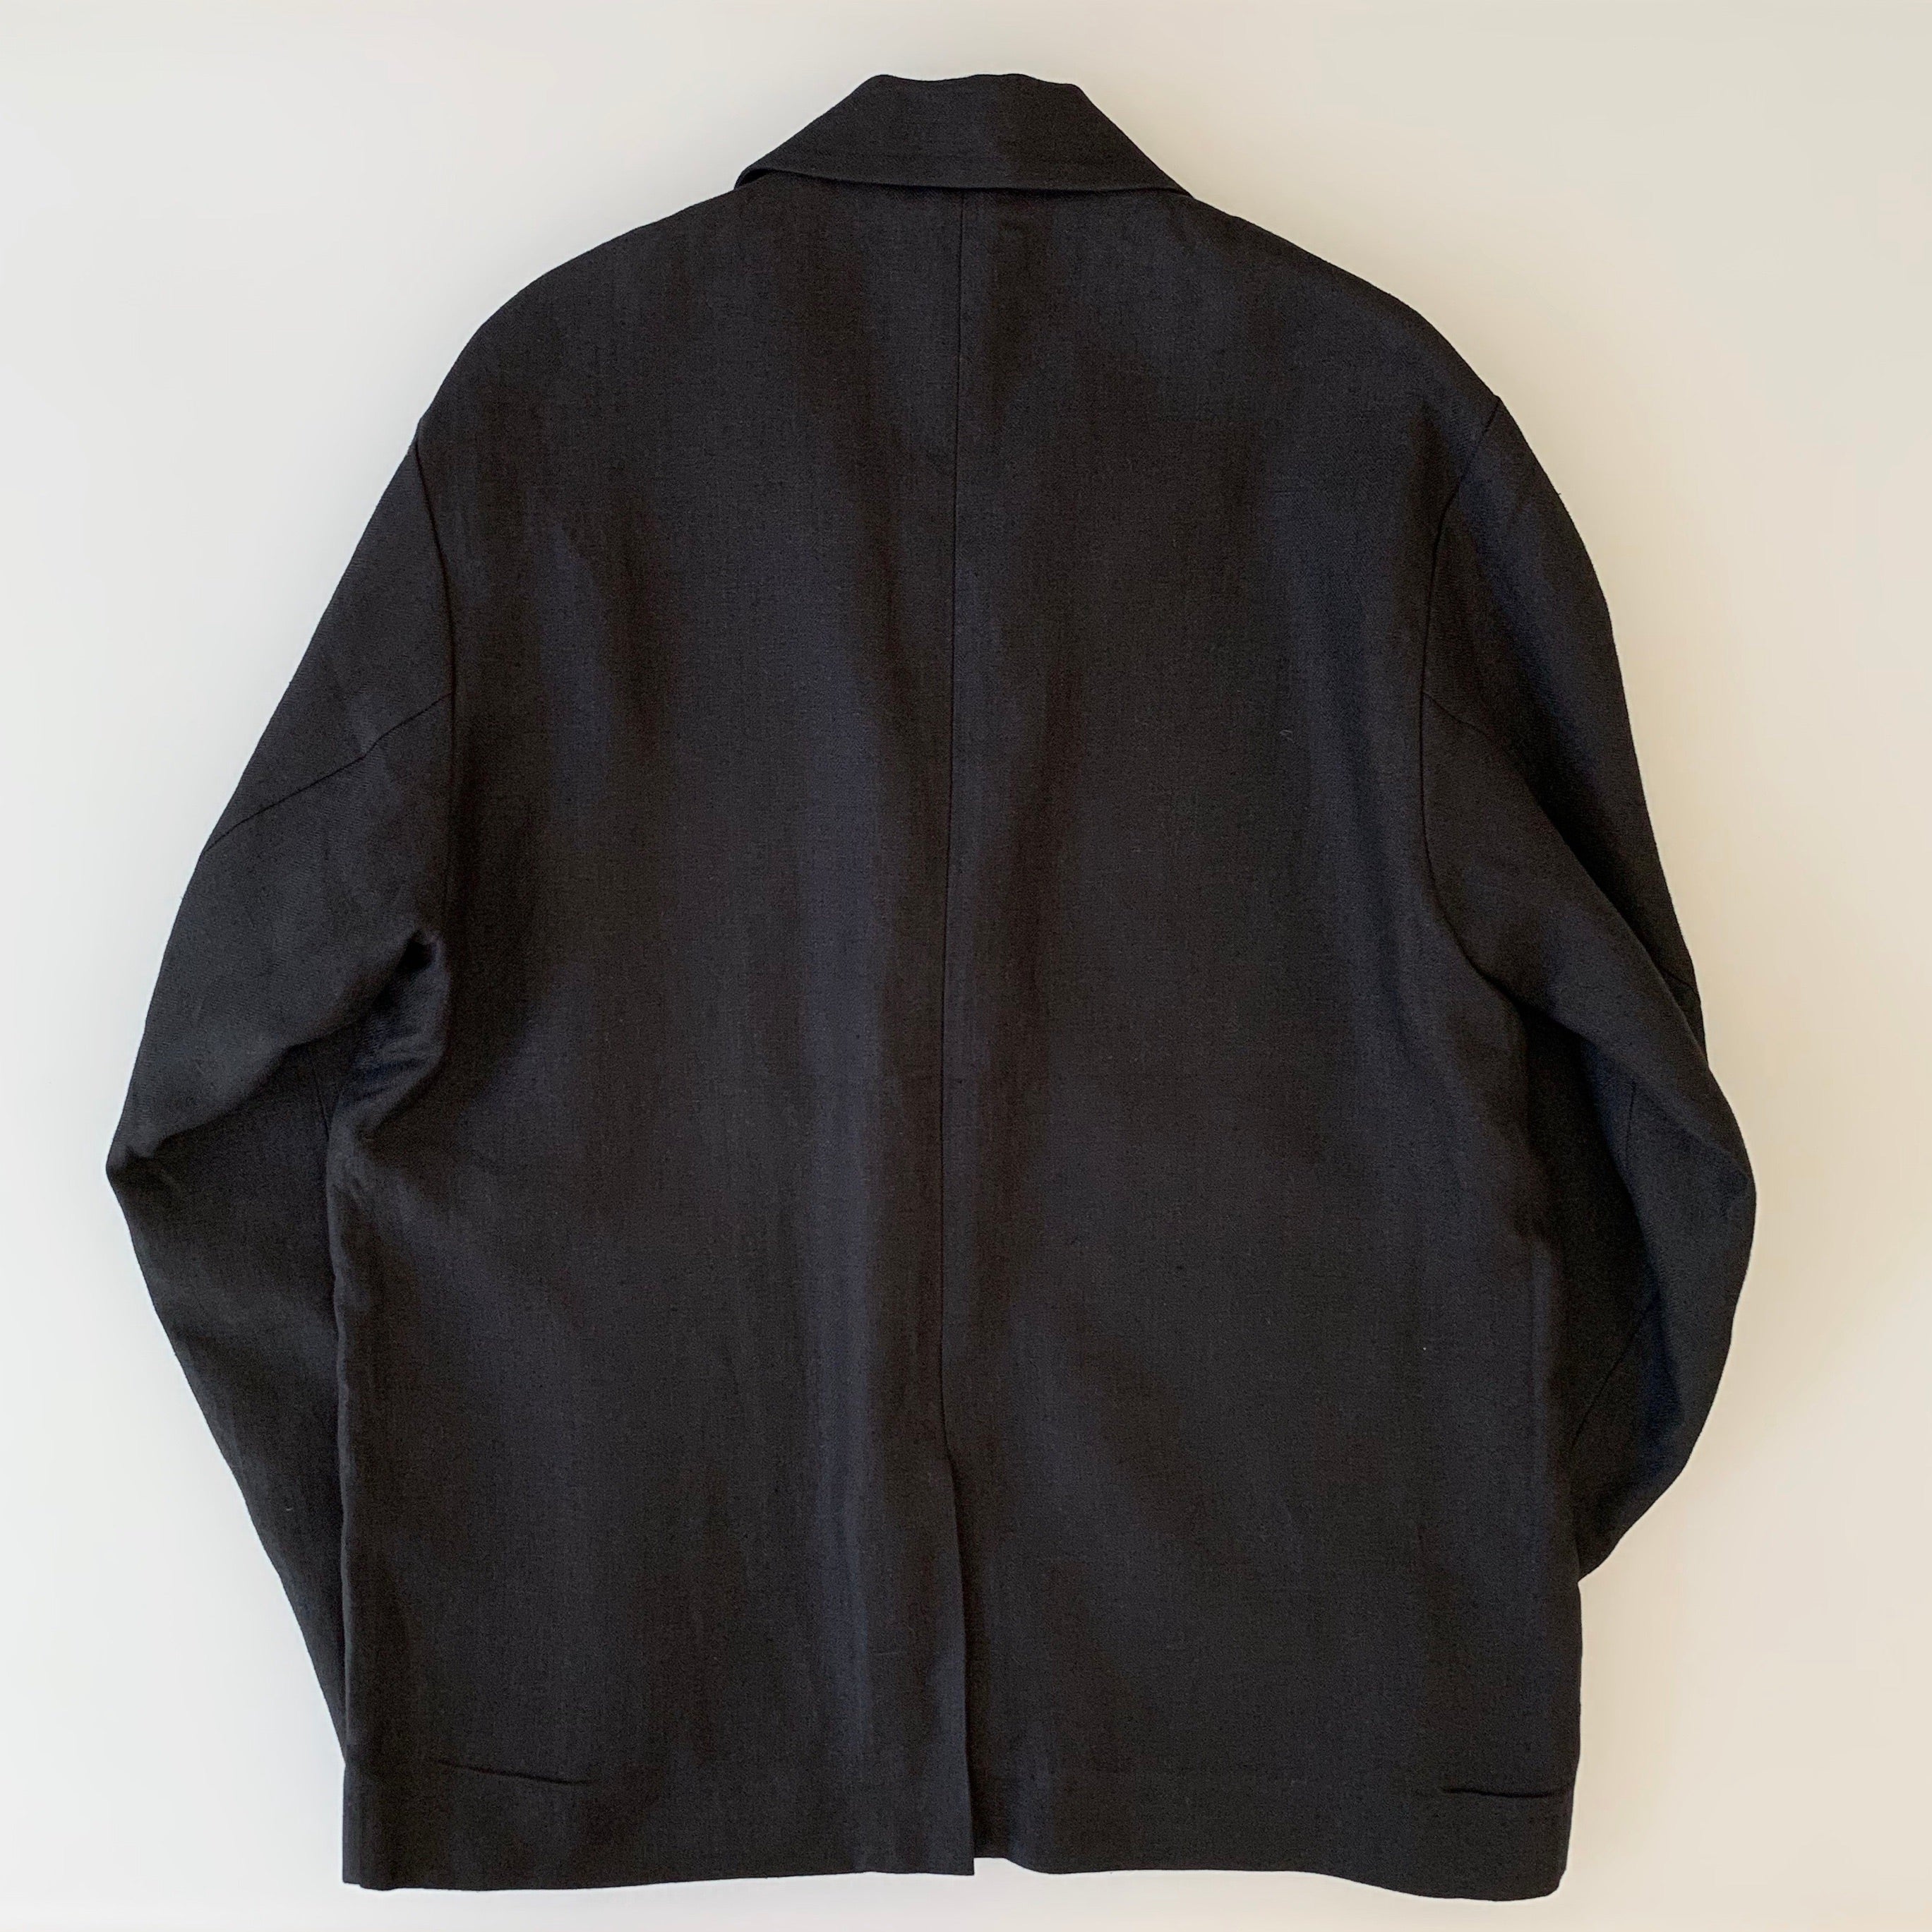 "Tango" Linen Jacket in Black